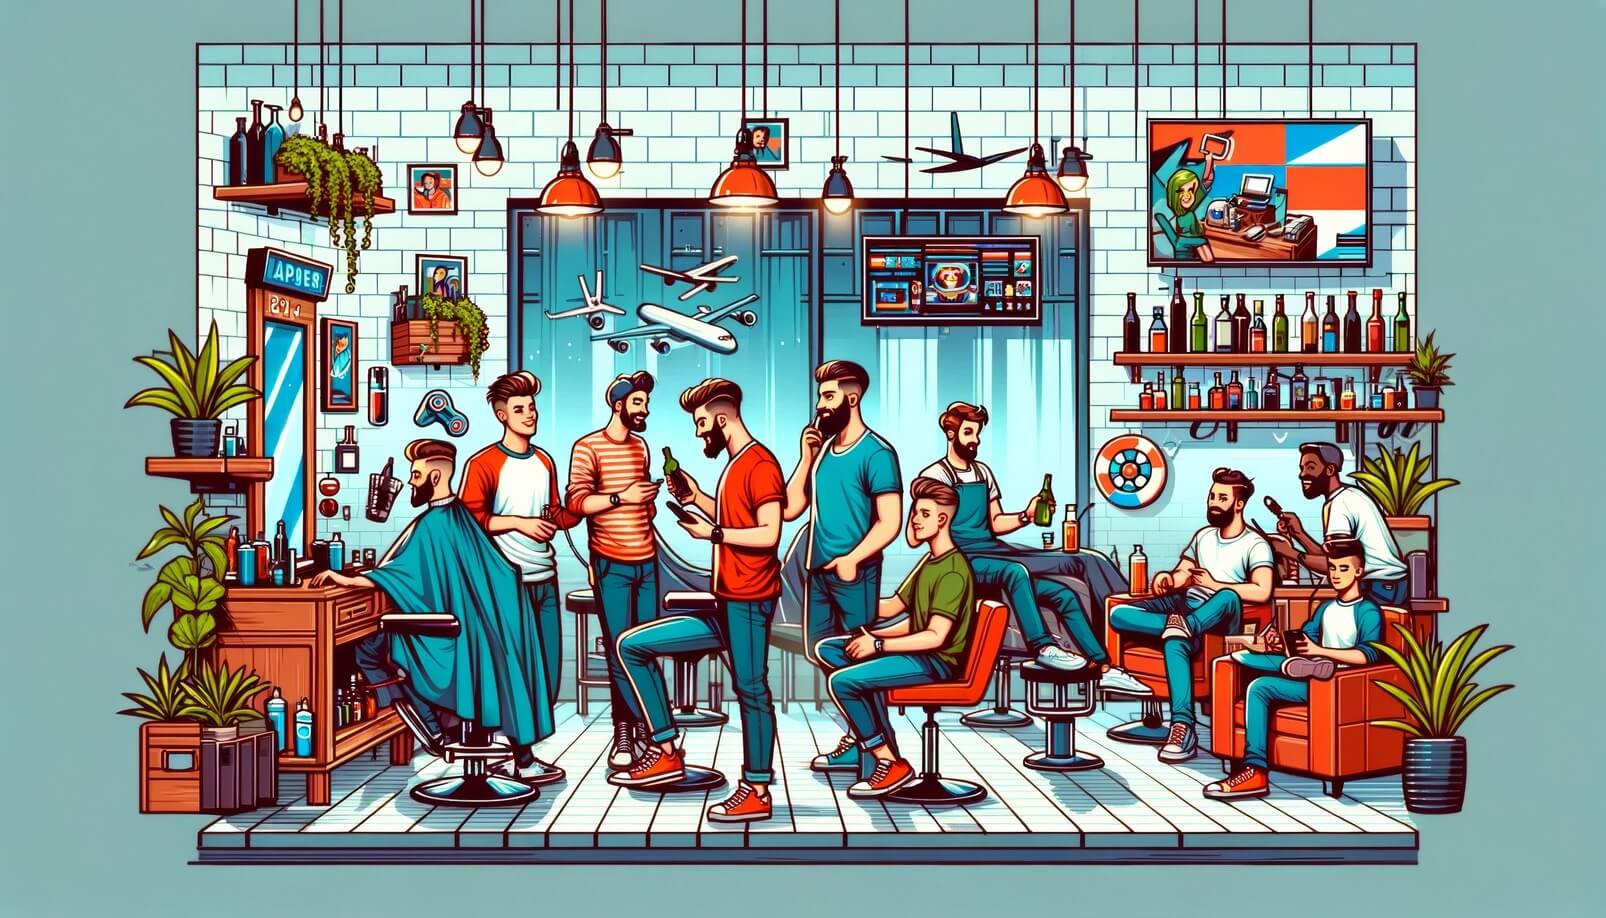 O Barbershop Moderno: Um Espaço Social e de Expressão Pessoal